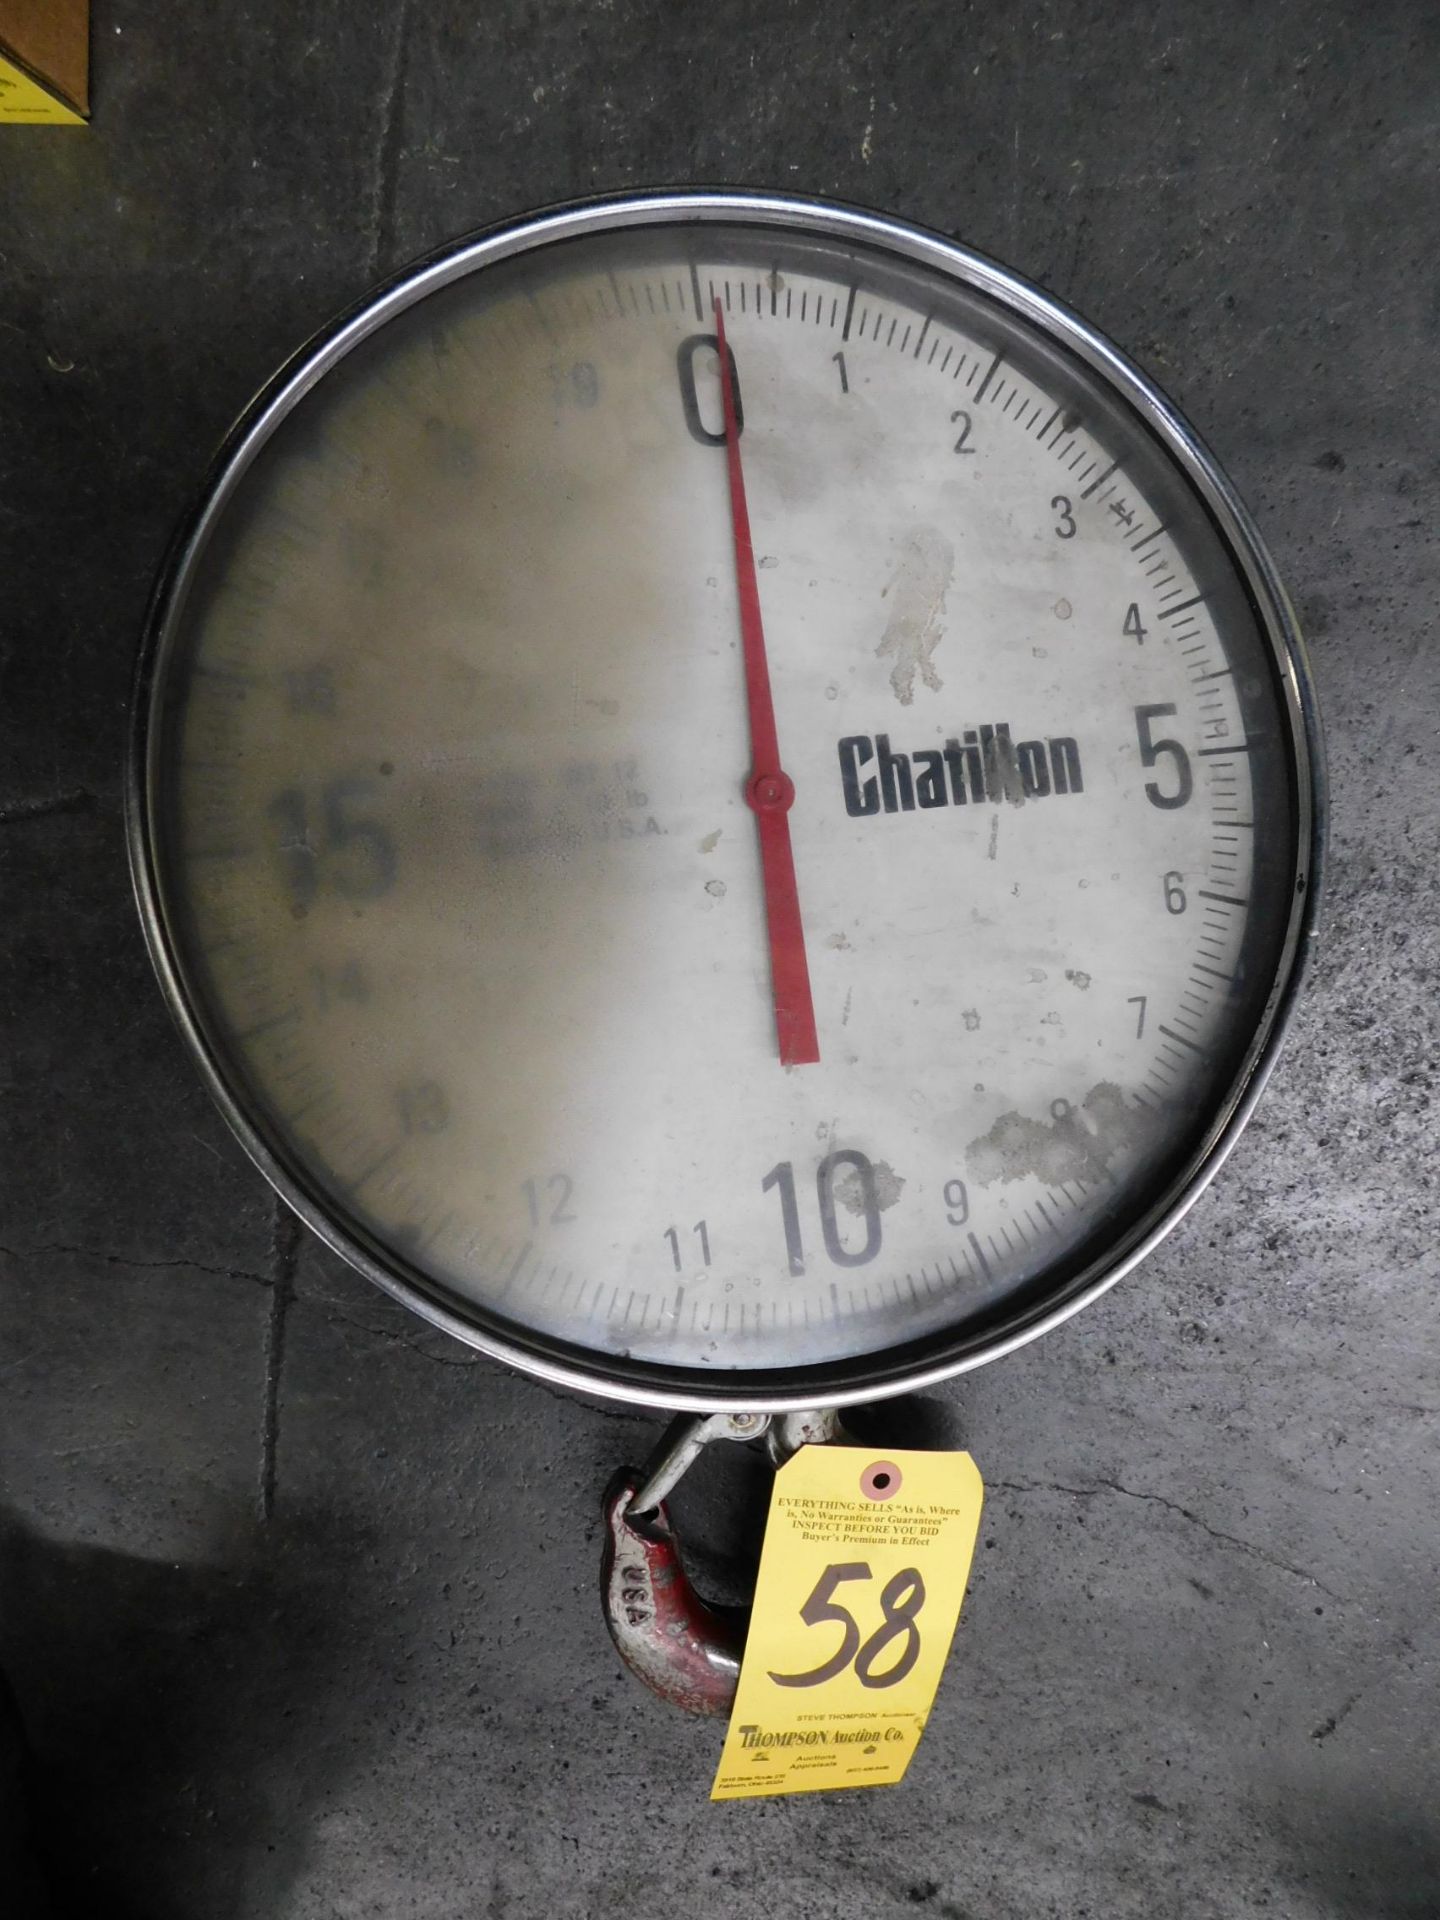 Chatillon 2,000 Lb. Capacity Crane Scale